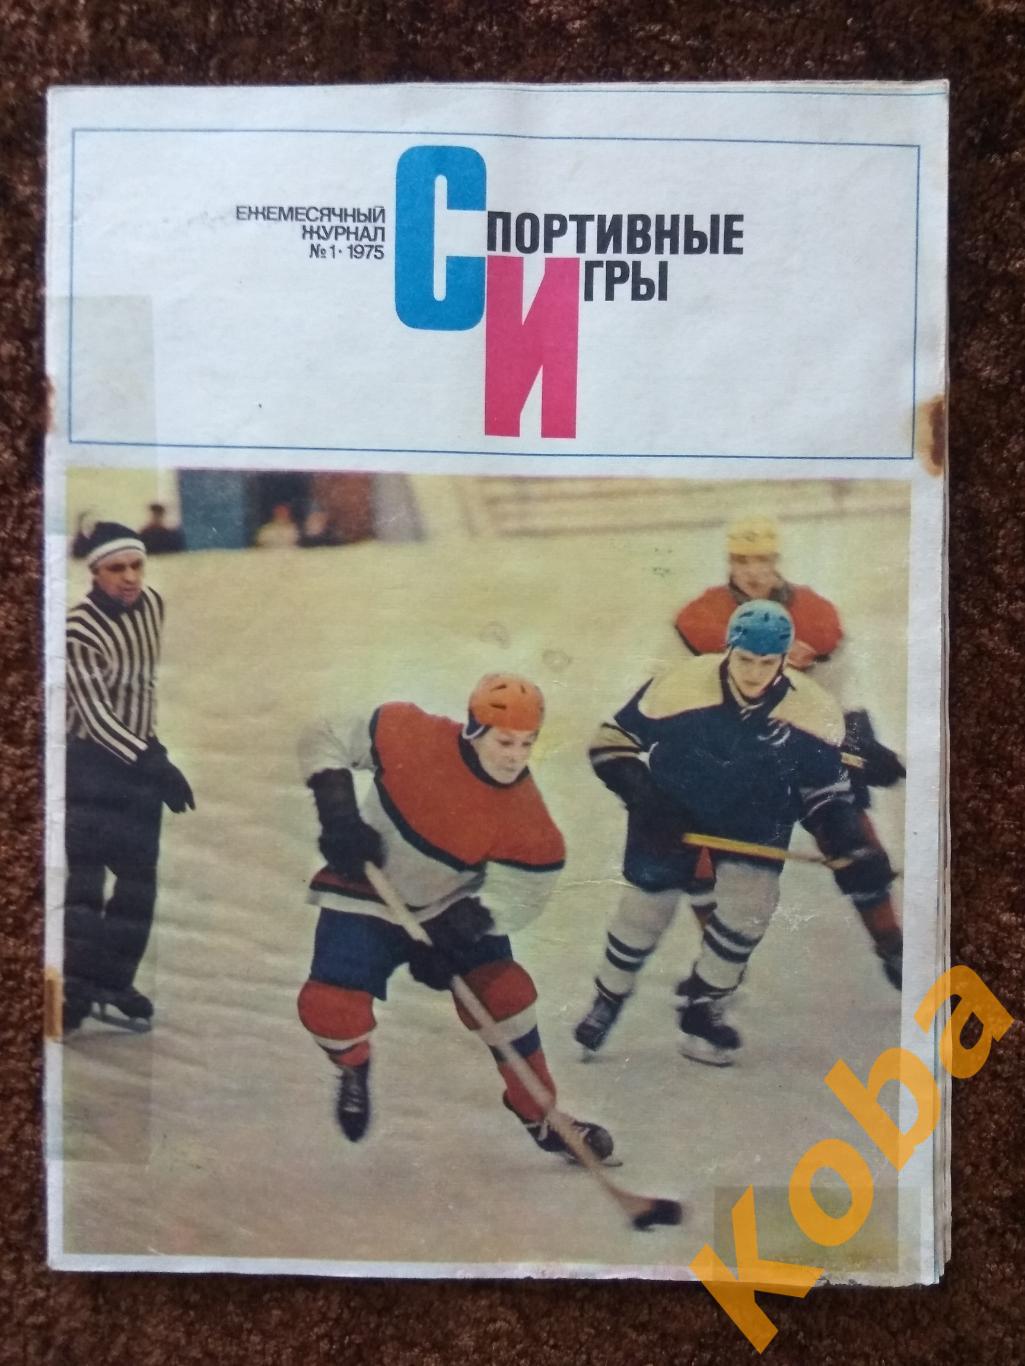 Спортивные игры 1975 №1 Хоккей НХЛ Фил Эспозито Фирсов Футбол Блохин Динамо Киев